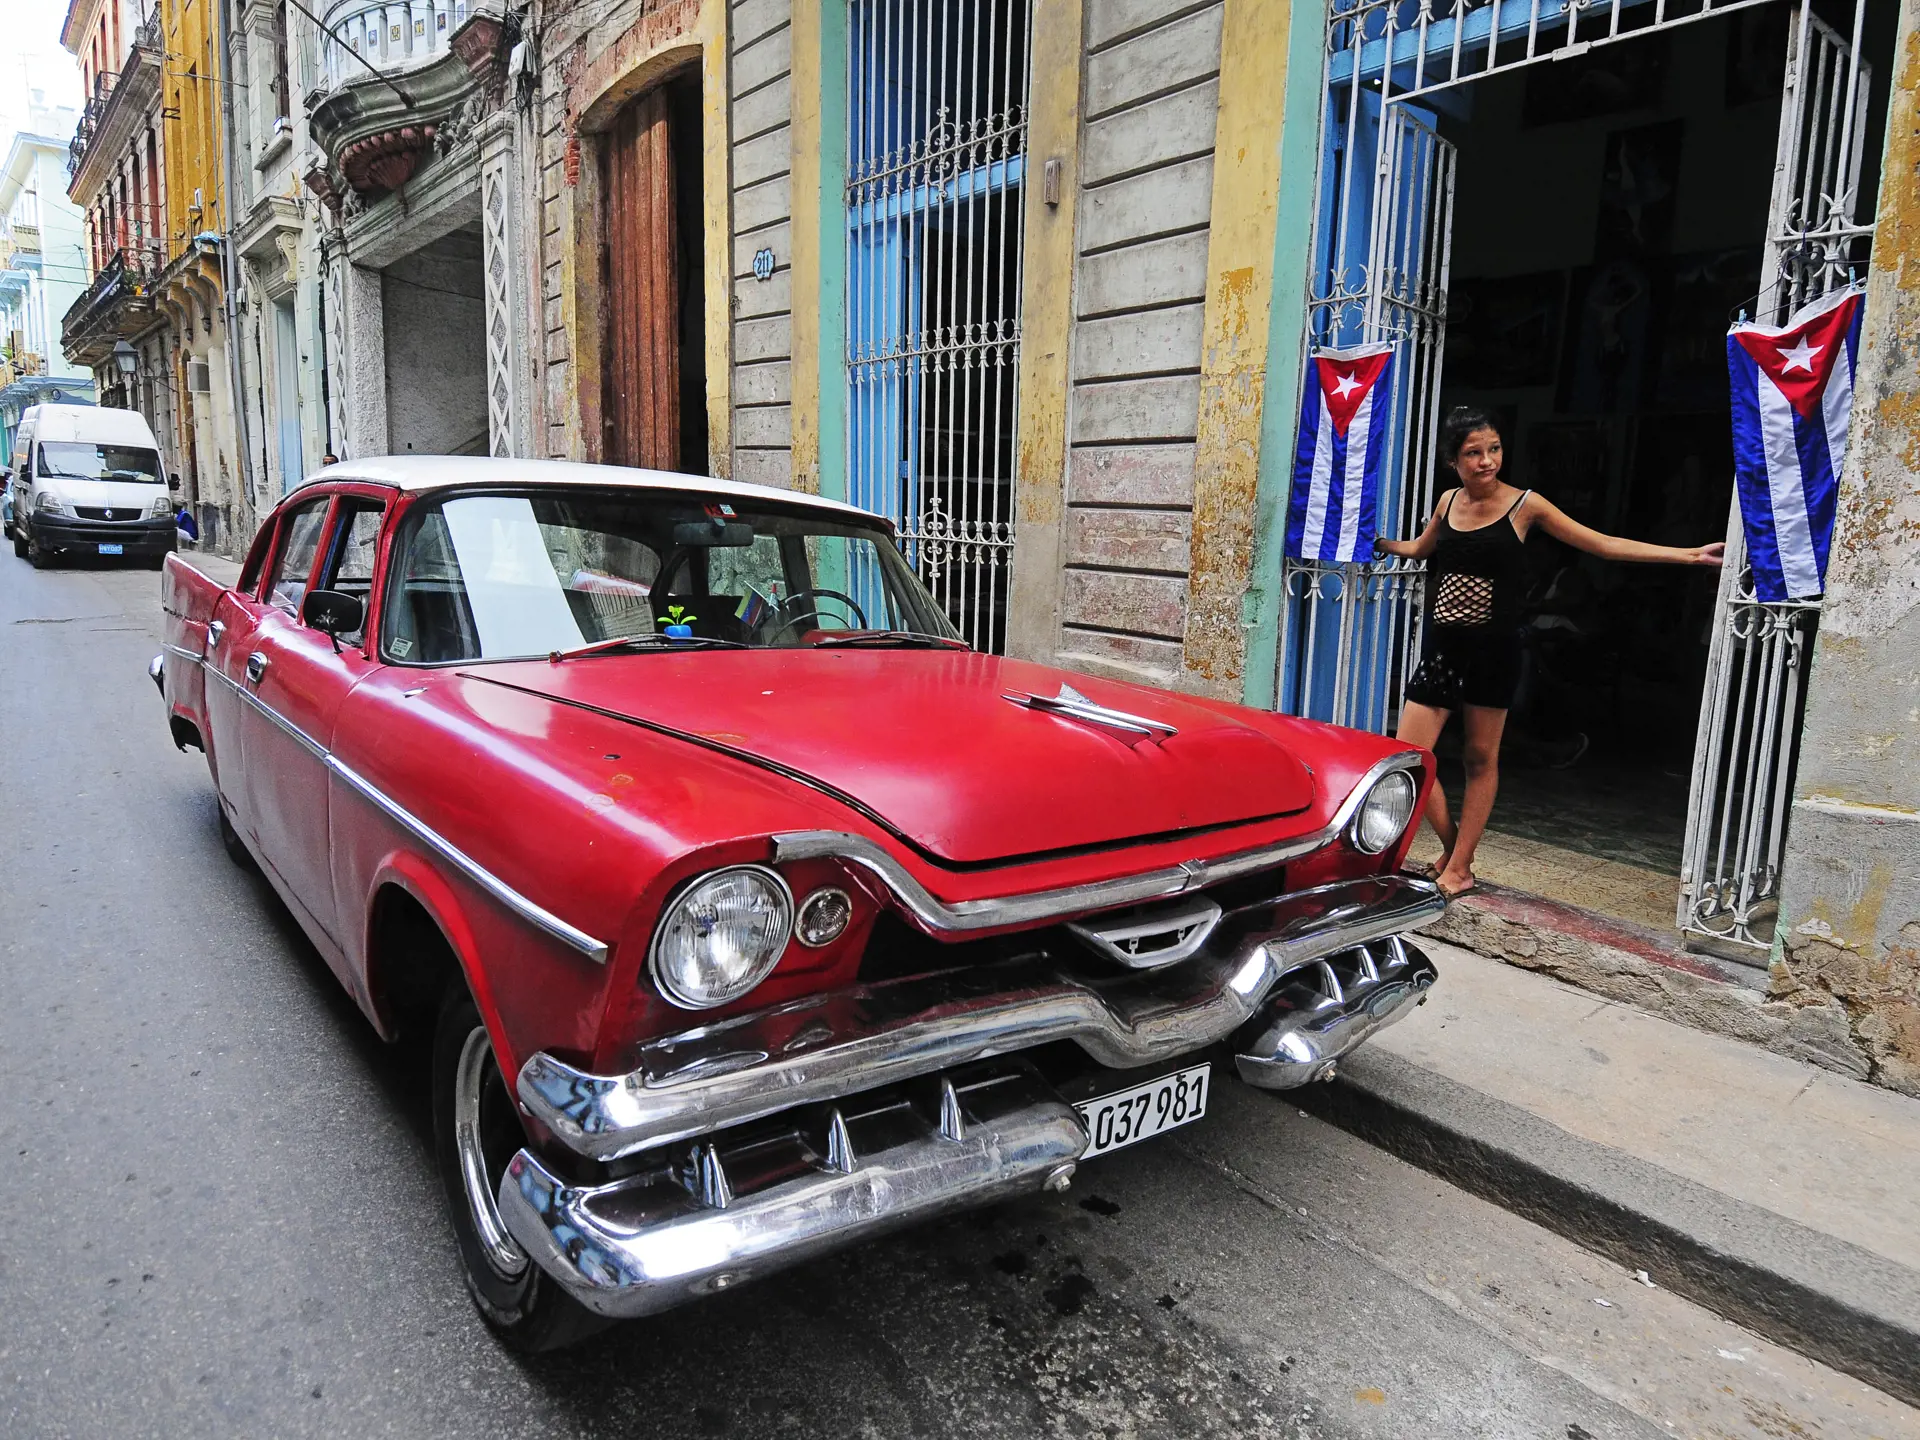 HAVANNA - I Havanna slår de gæstfrie cubanere dørene op for turisterne.